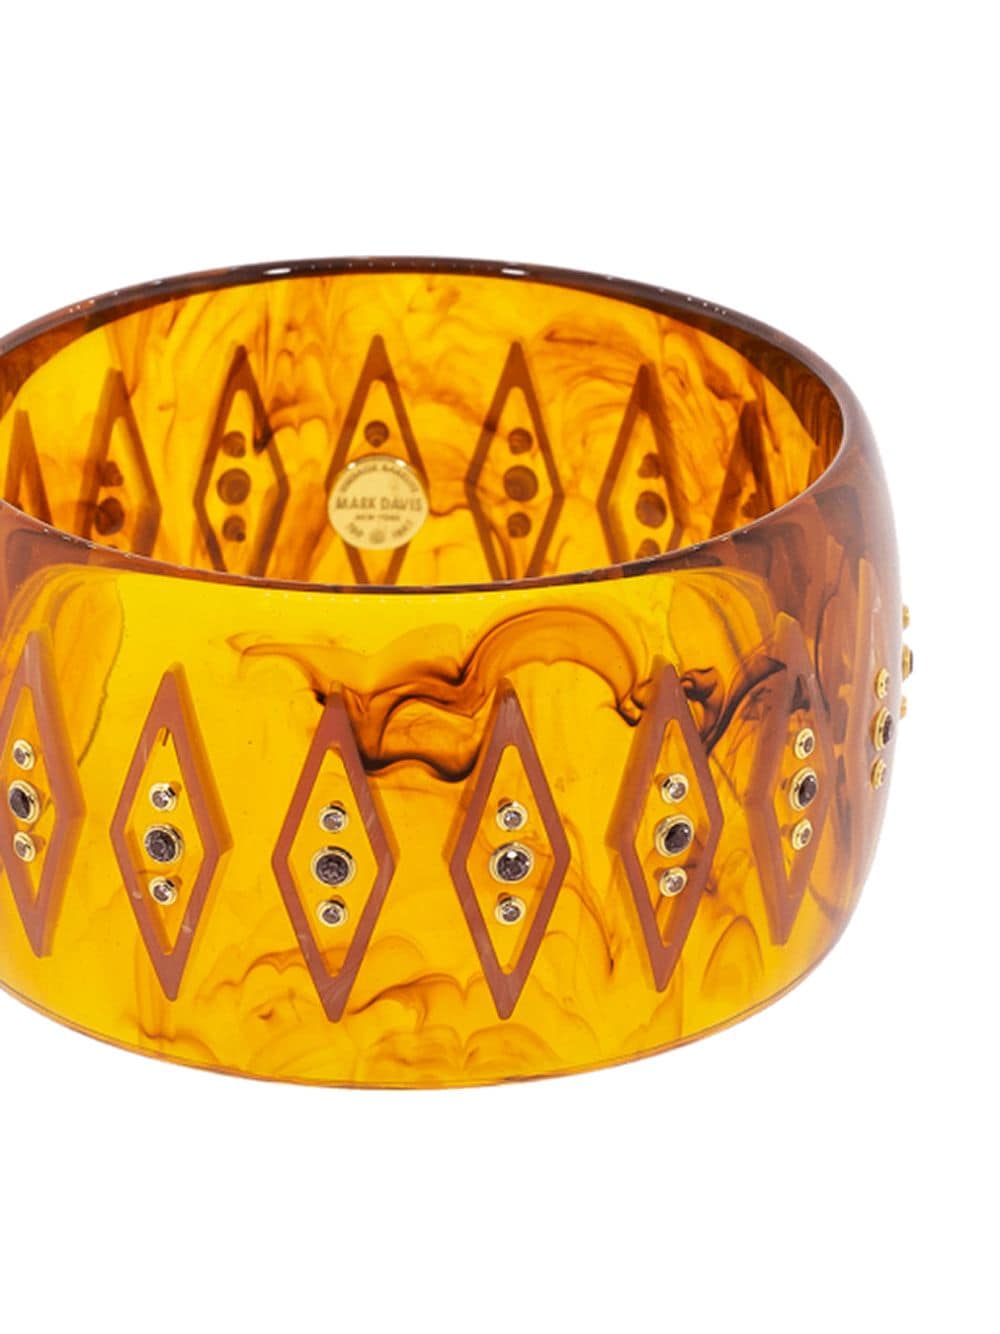 Image 2 of Mark Davis 18kt gold sapphire bakelite bangle bracelet